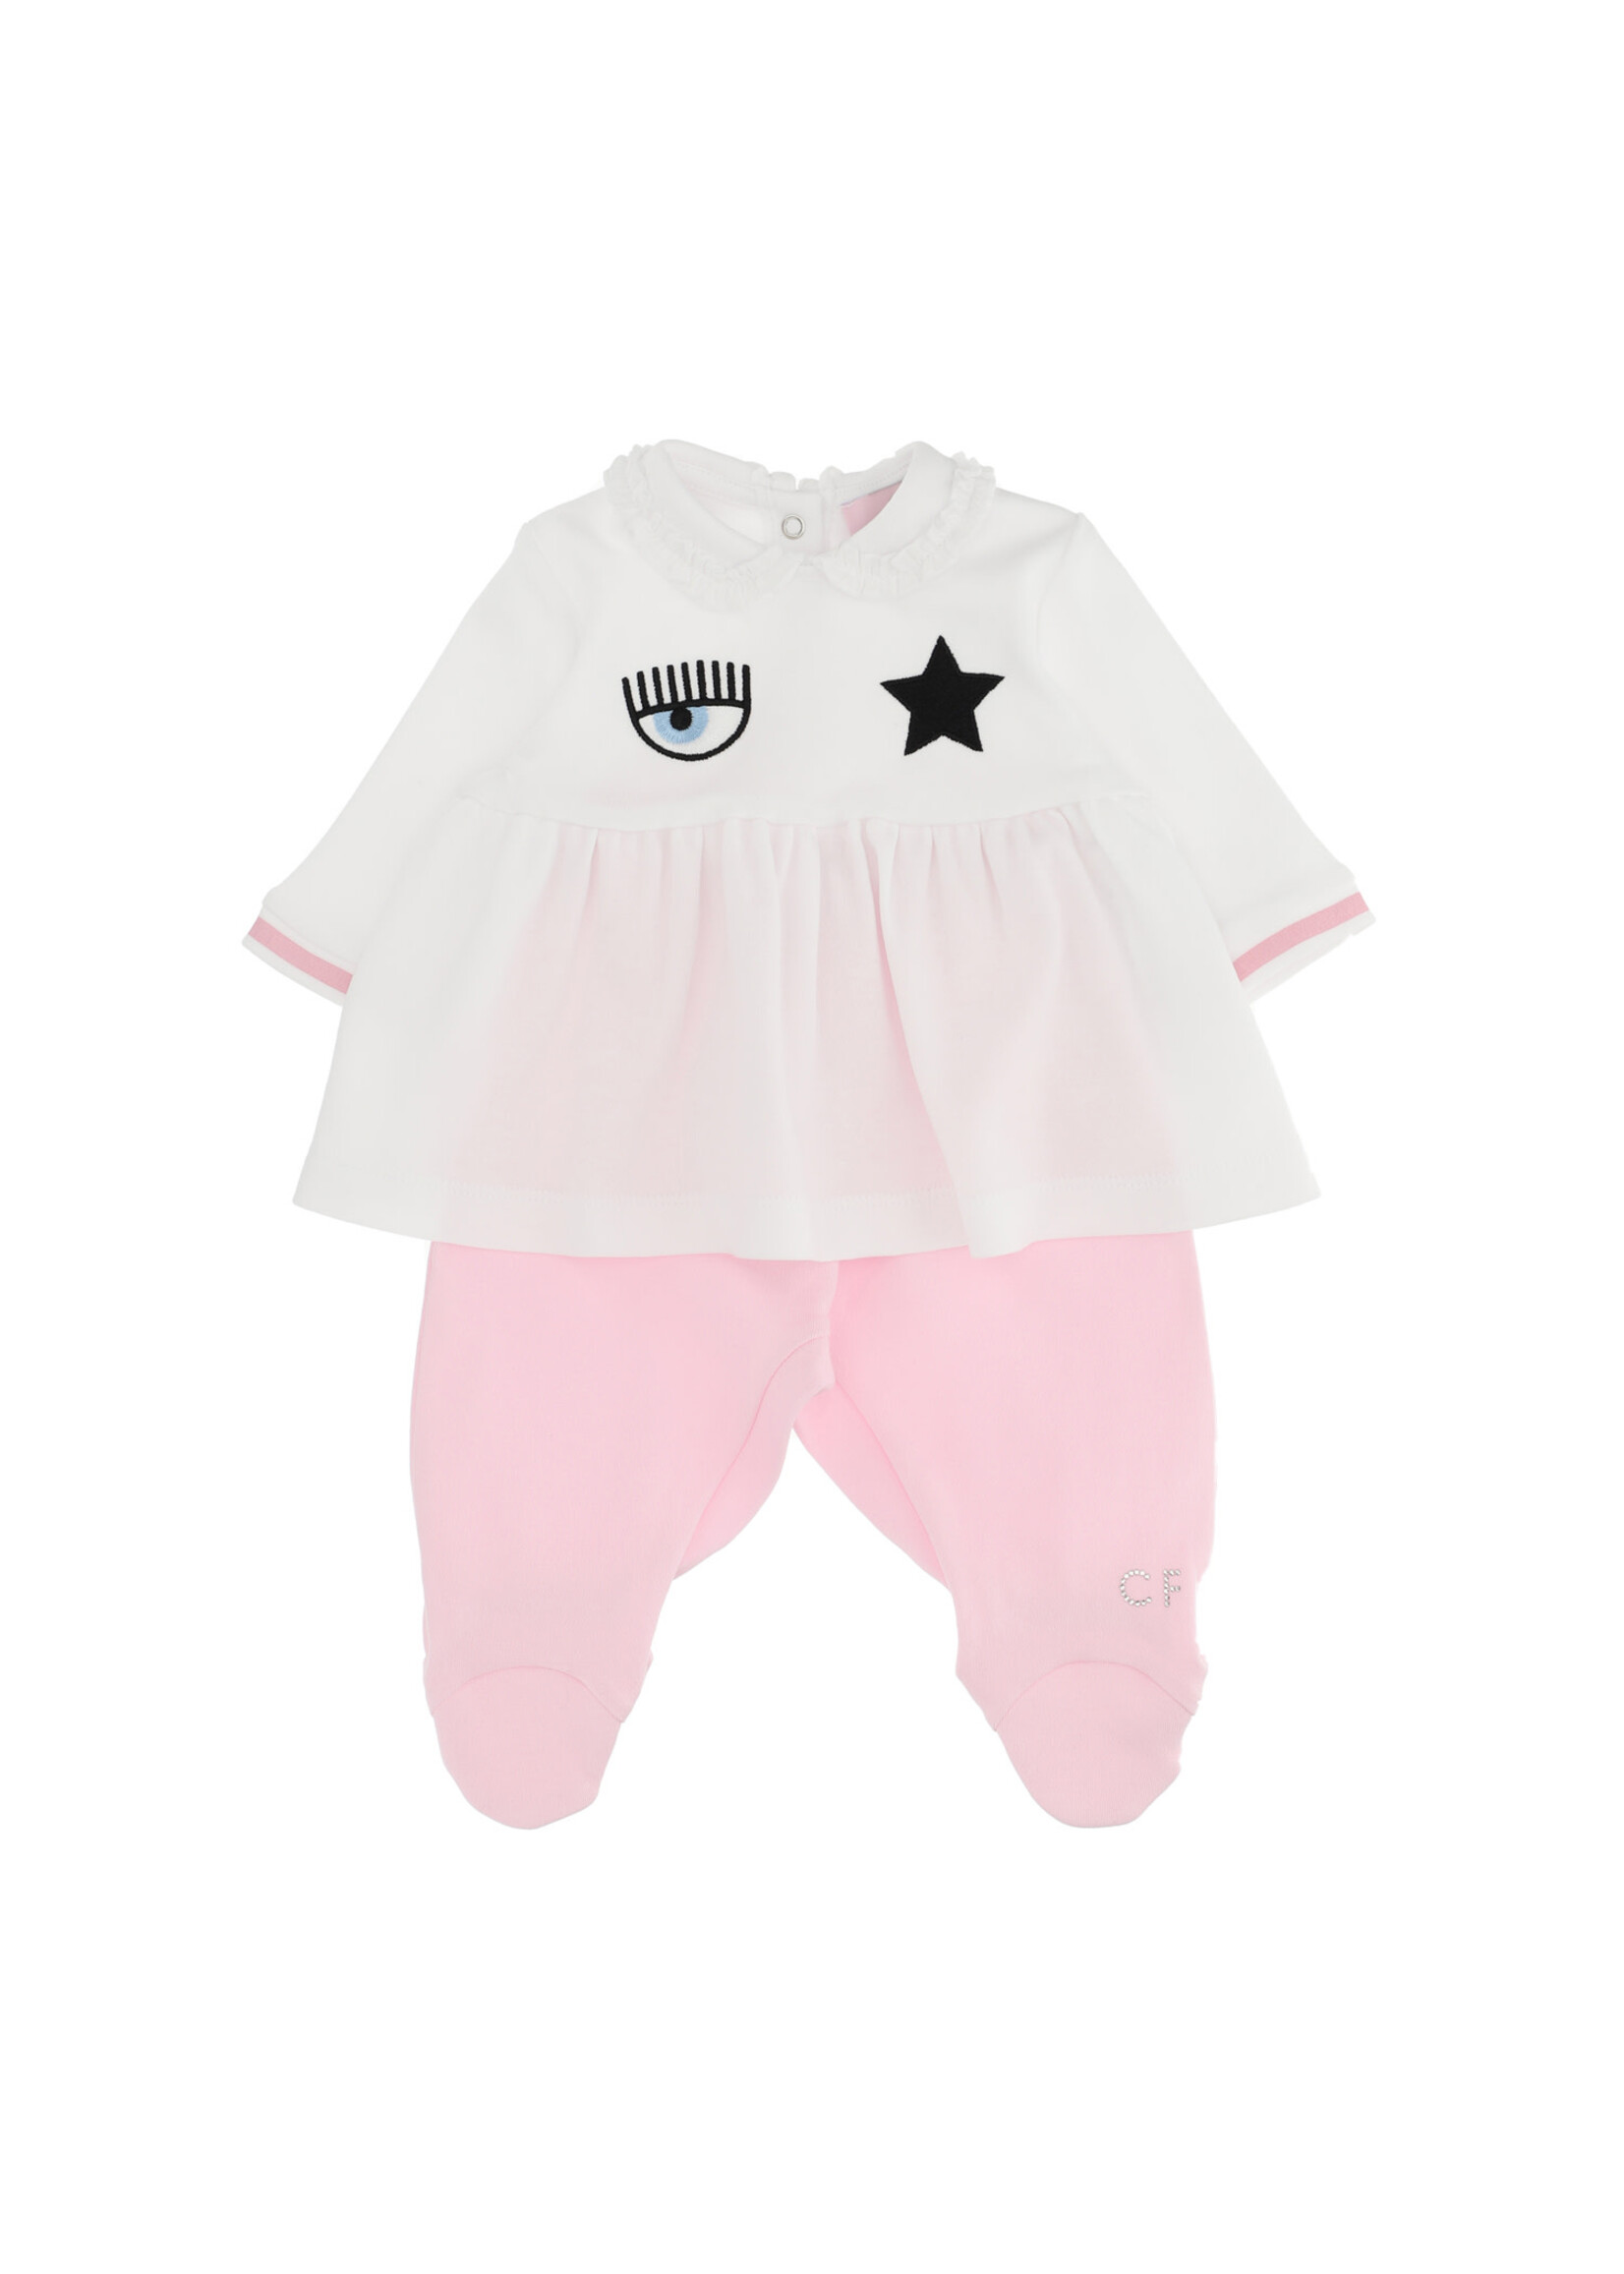 Chiara Ferragni by Monnalisa Chiara Ferragni Babygirl set t-shirt & pants pink/white - 559500